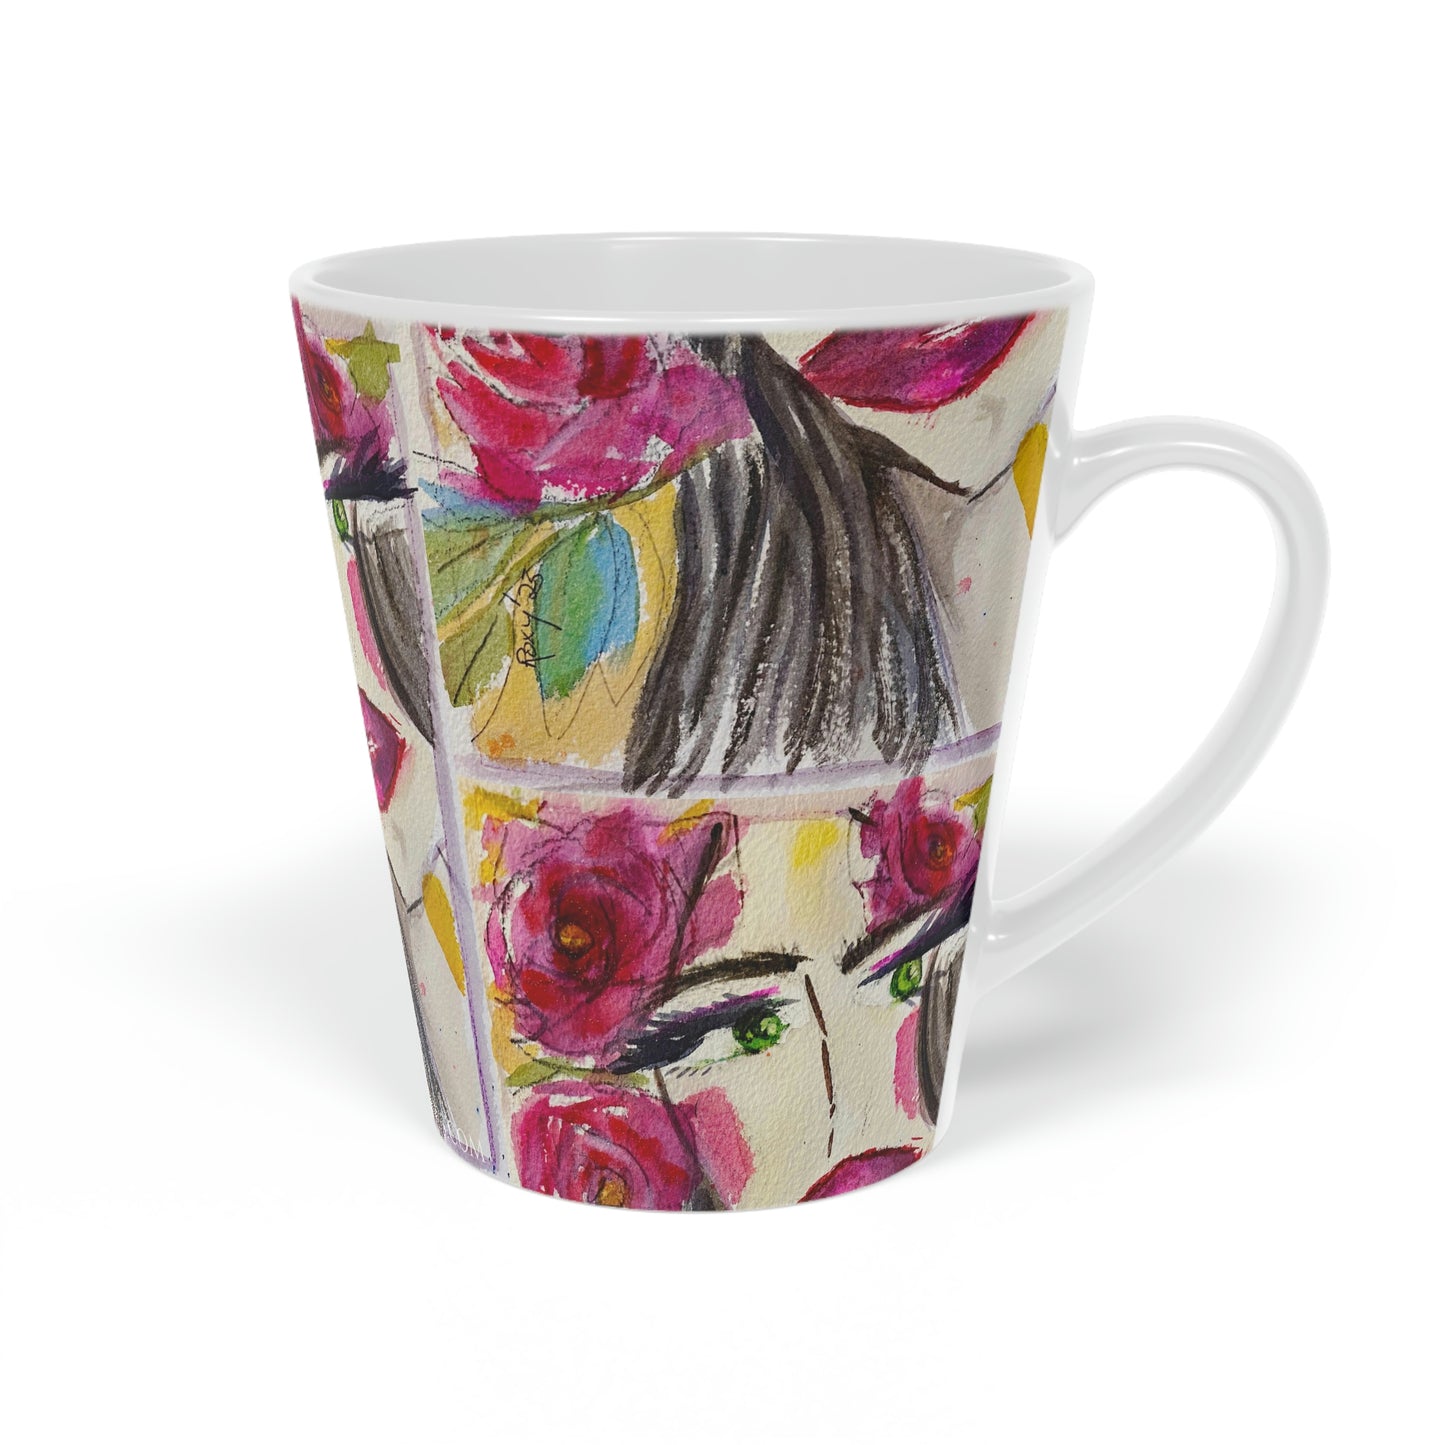 Brunette with Roses "Uh-huh"  Latte Mug, 12oz